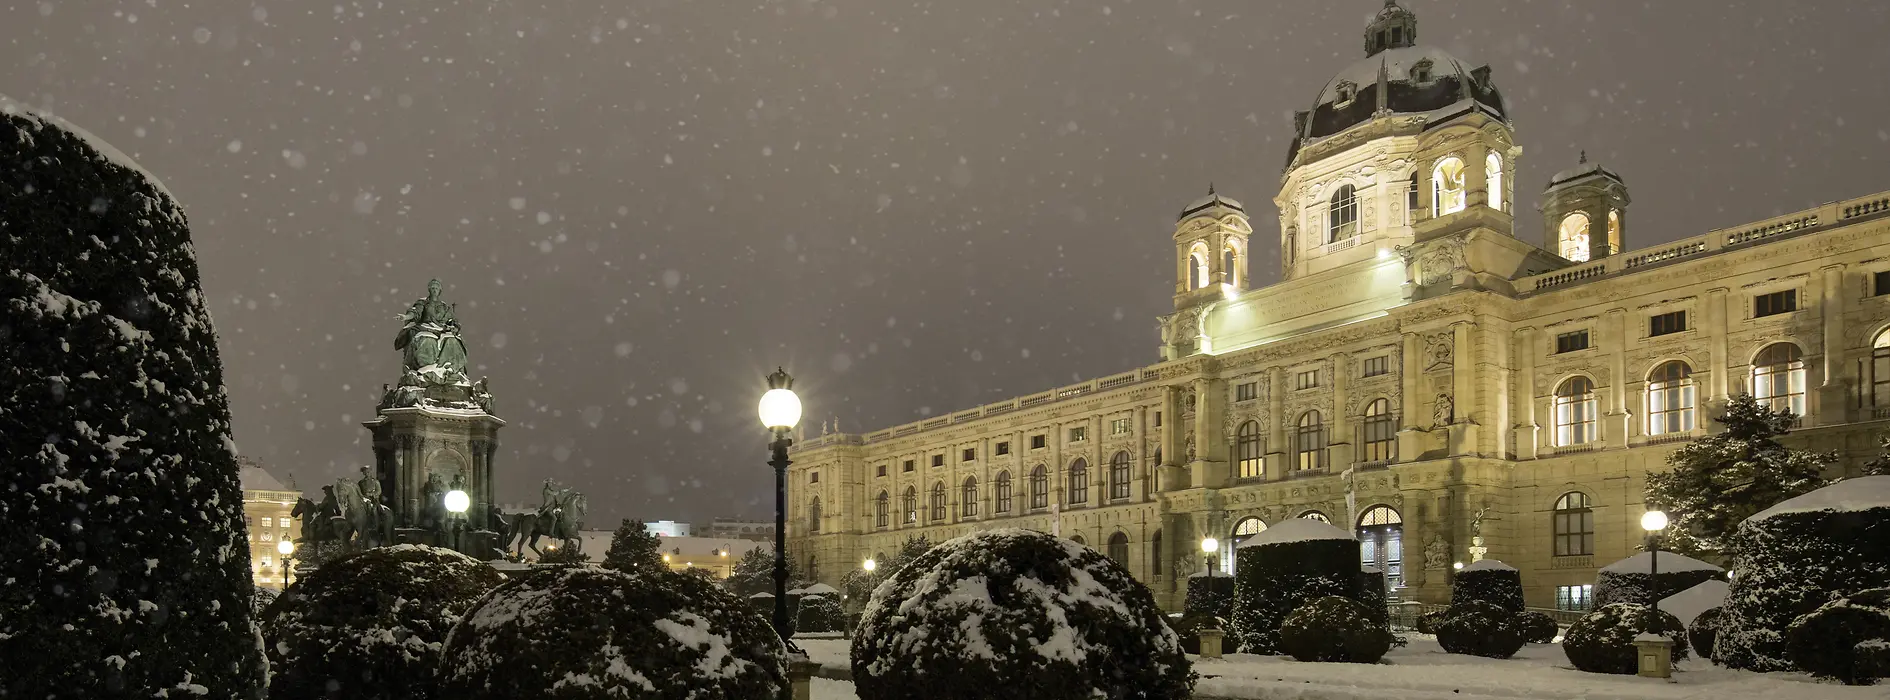 Naturhistorisches Museum Vienna (Museo di Storia naturale) d’inverno, sotto la neve che cade